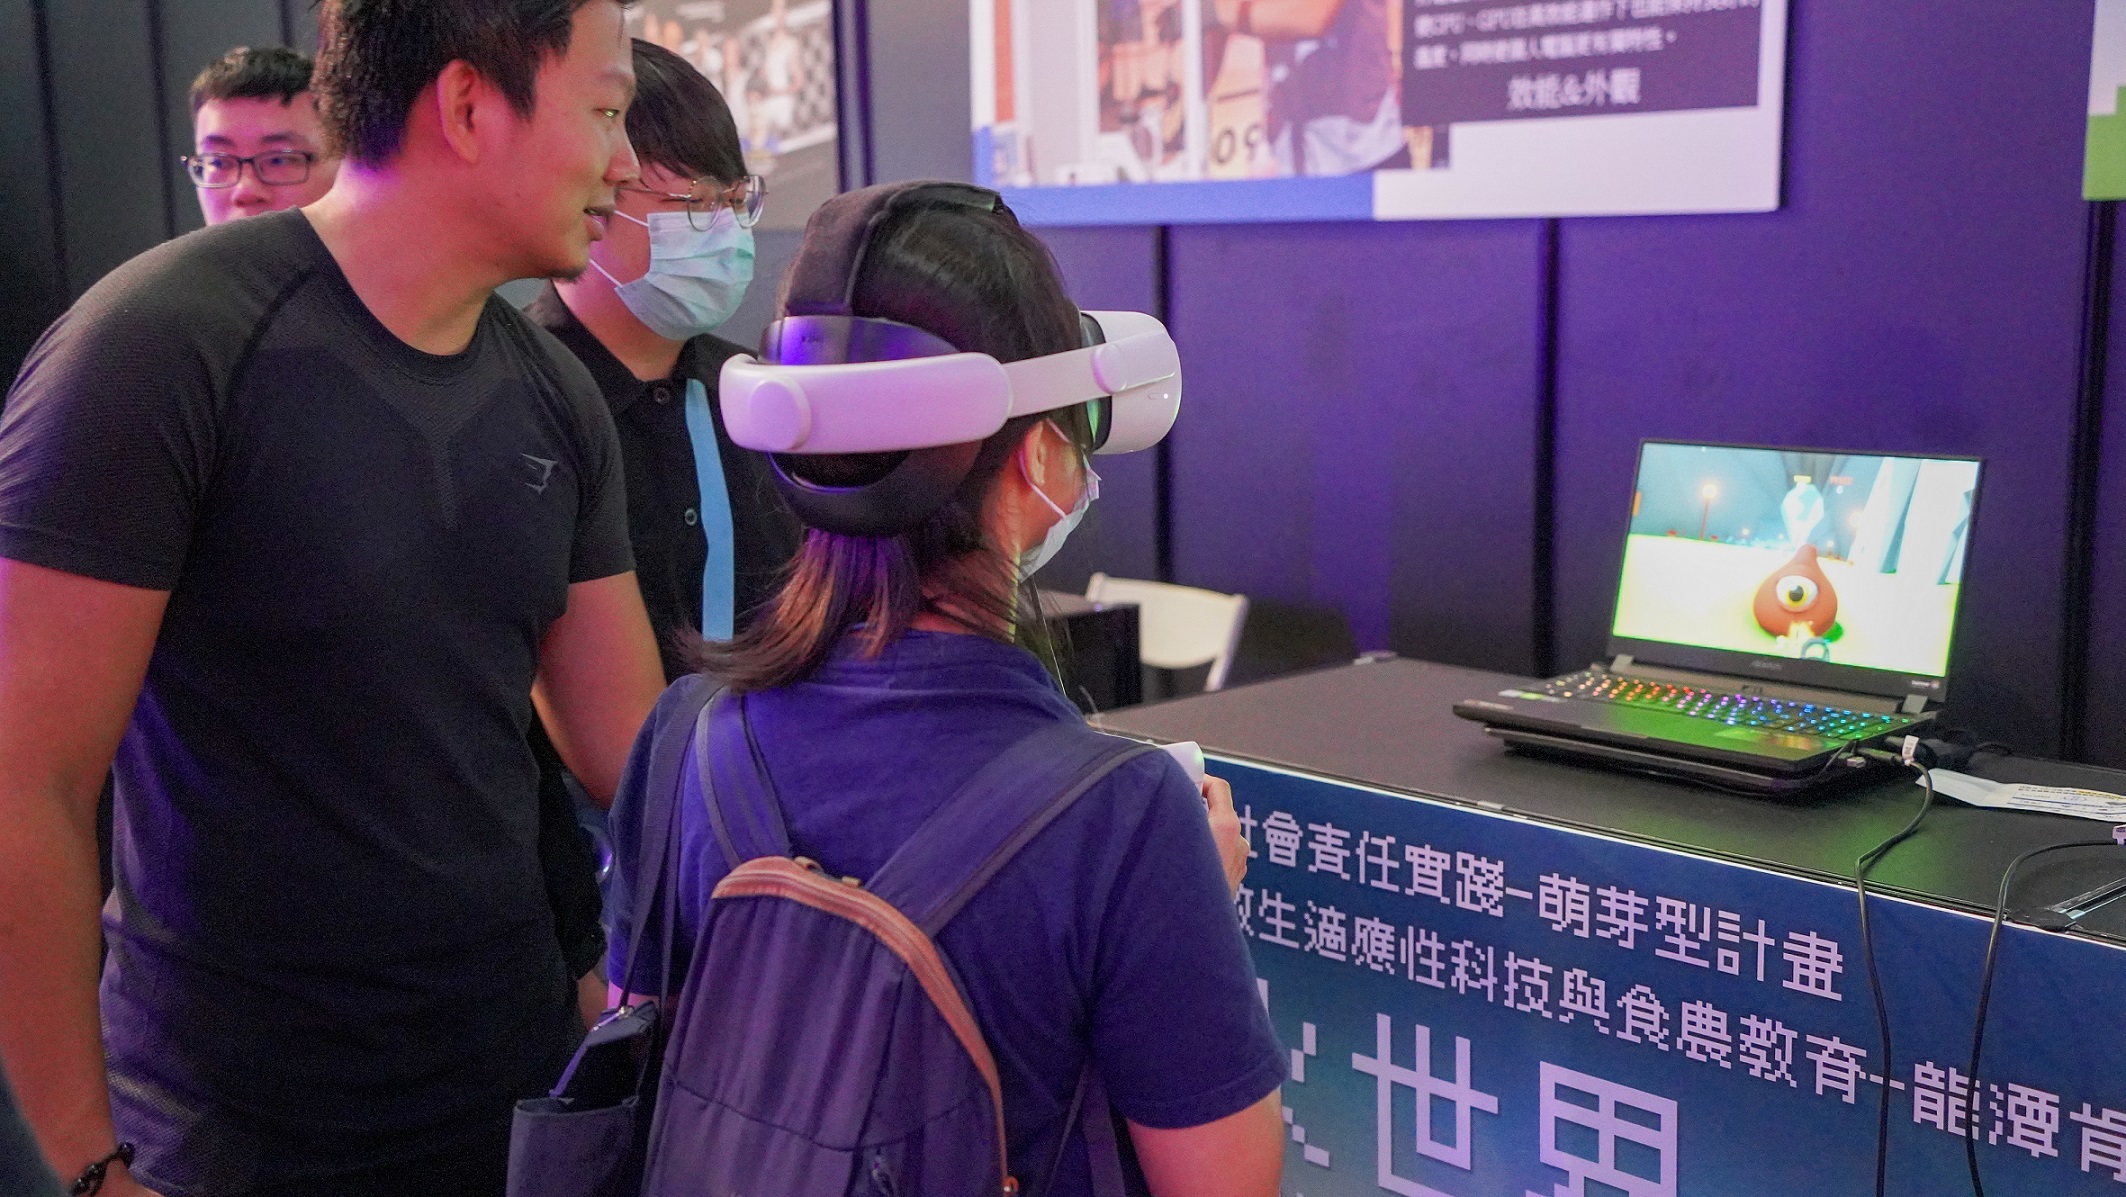 桃園龍華科技大學展示「特教生VR虛擬實境適應性運動計畫」，透過科技輔具，帶領特教生進入沉浸式遊戲環境，幫助改善其認知功能與學習動機。